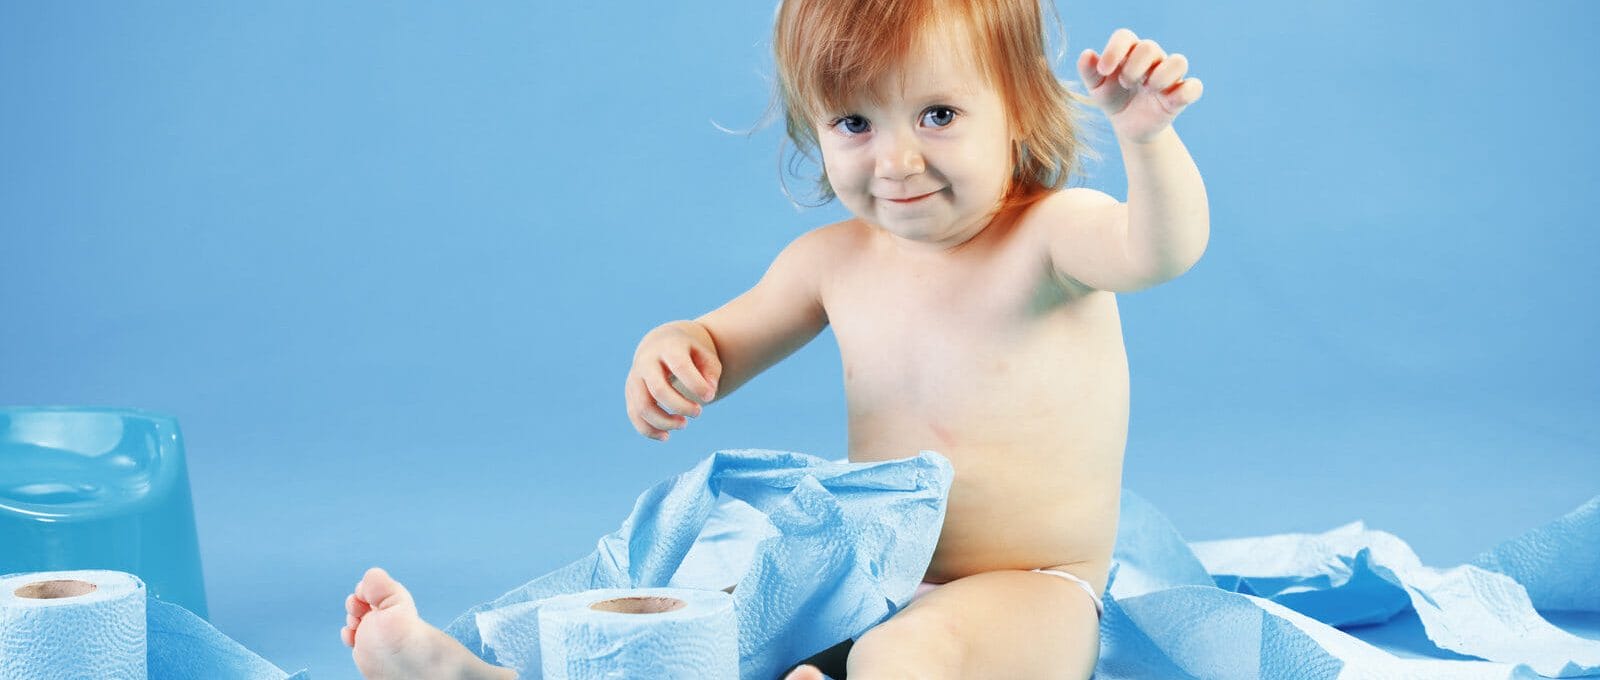 criança sentada em um cenário azul, brincando com rolos de papeis higiênicos azuis durante o desfralde